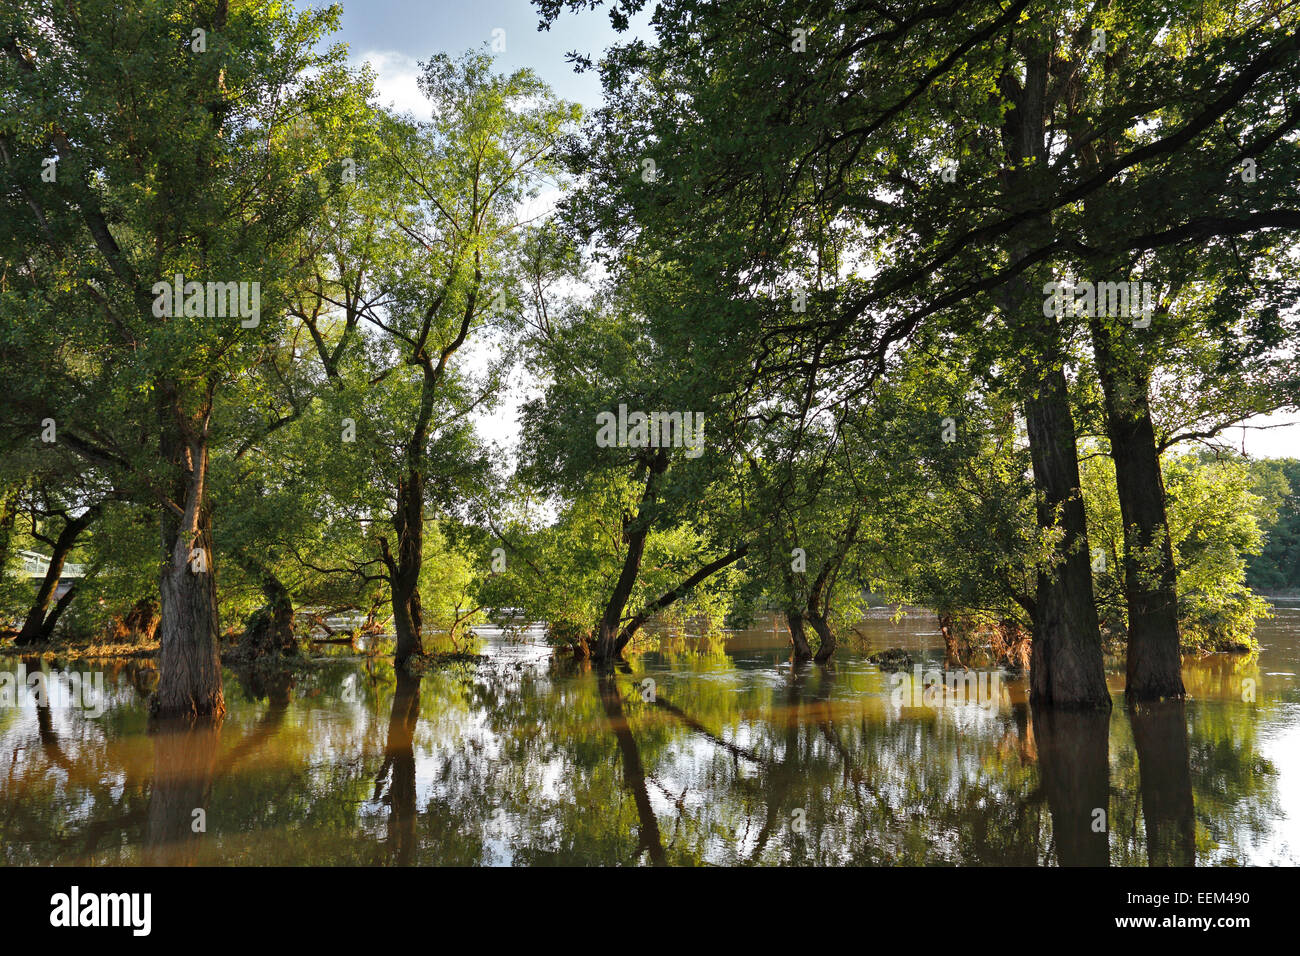 Estate inondazioni in un legno duro floodplain forest, Riserva della Biosfera dell'Elba centrale, Dessau-Rosslau, Sassonia-Anhalt, Germania Foto Stock